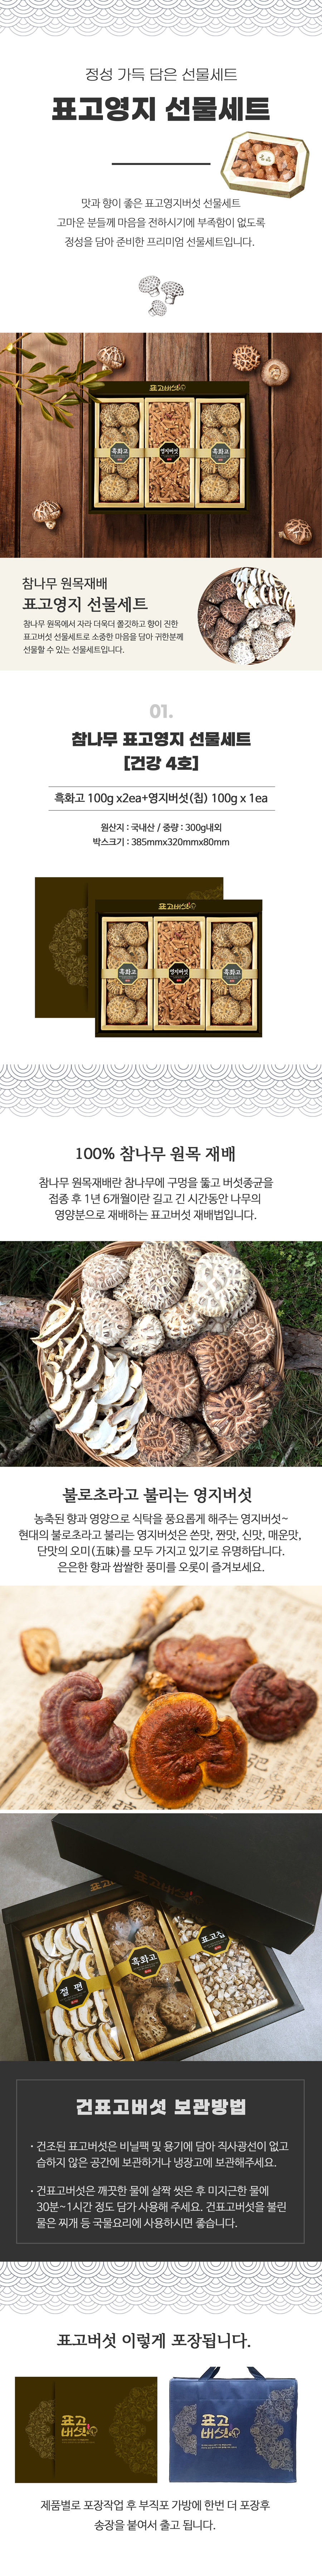 참나무 표고영지버섯 선물세트 건강4호